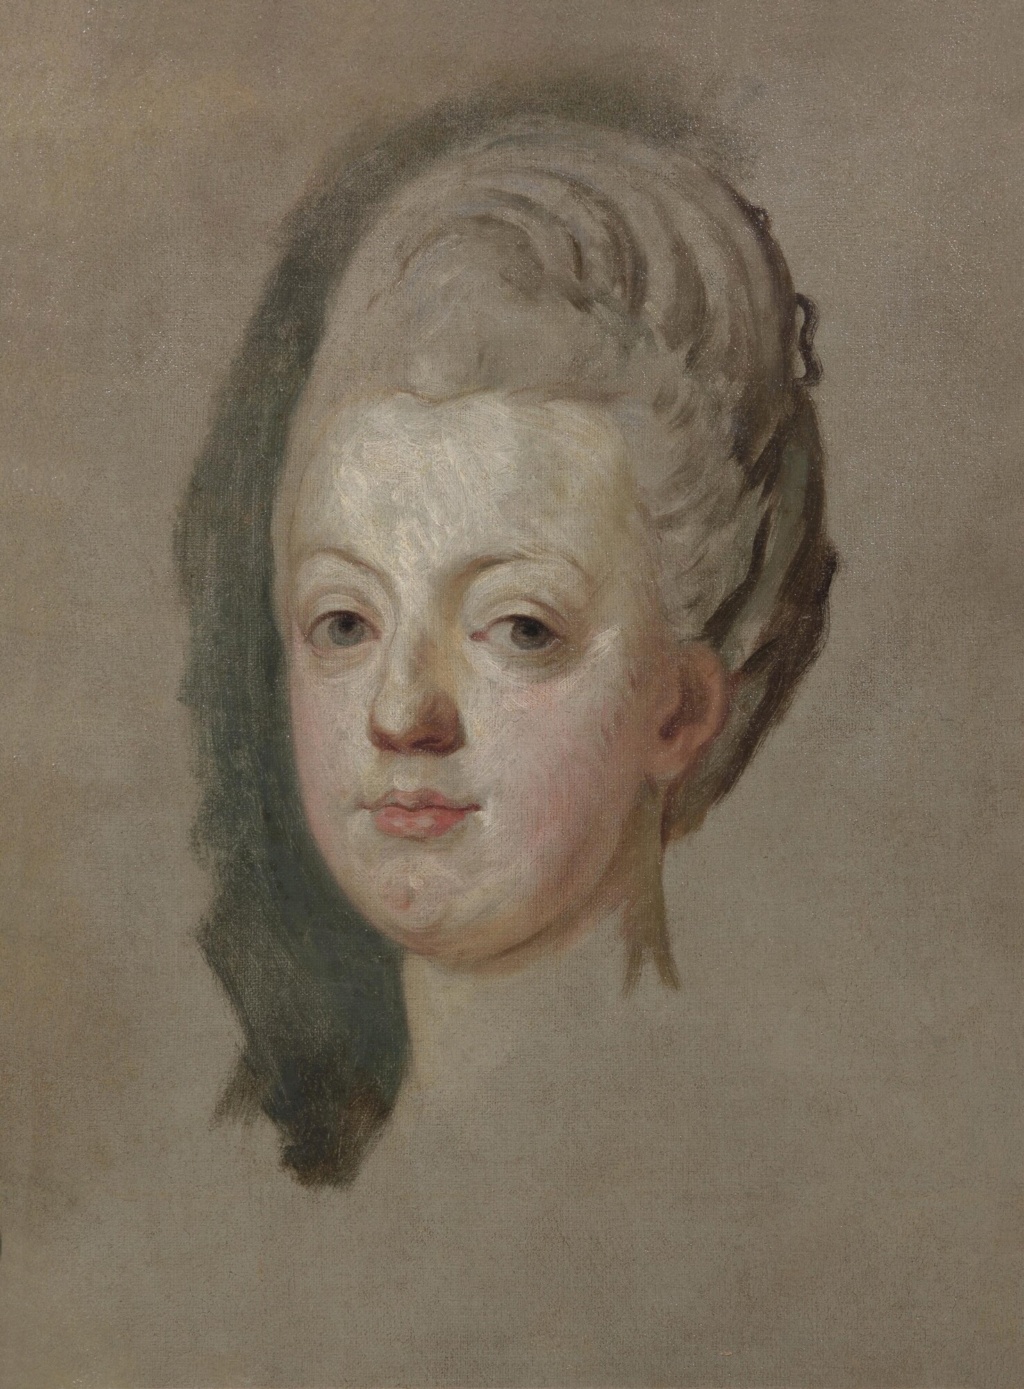 josephe - Portrait de Marie-Antoinette ou de Marie-Josèphe, par Meytens ? - Page 5 Downlo10